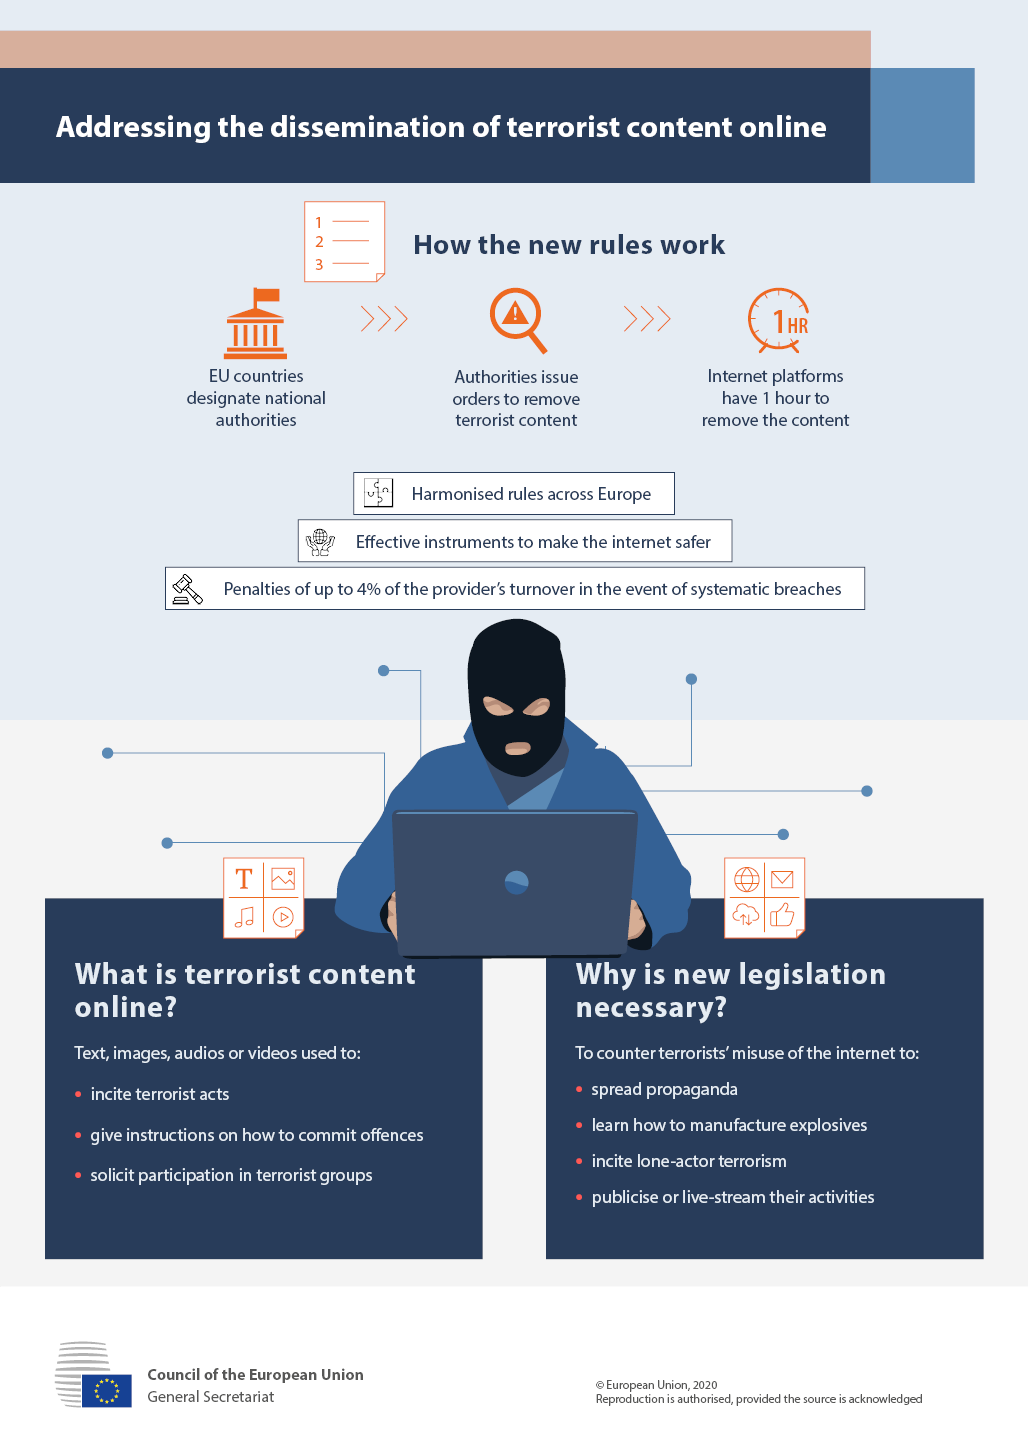 Source: https://www.consilium.europa.eu/en/infographics/terrorist-content-online/